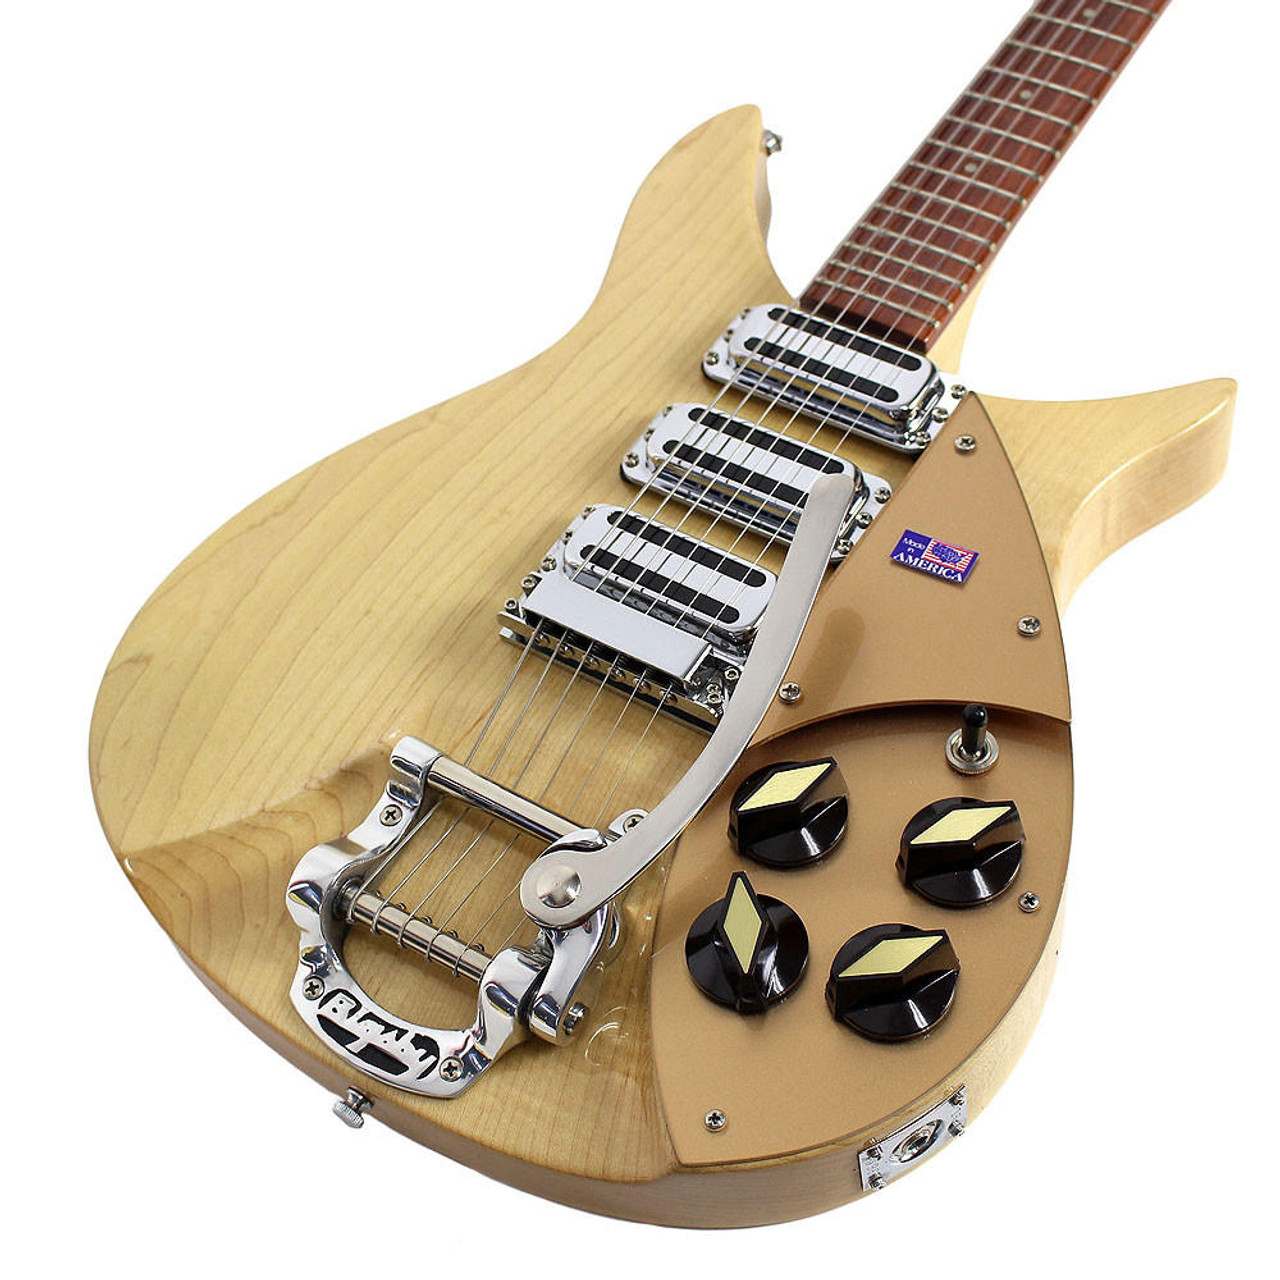 1993 Rickenbacker 325V59 John Lennon Model Electric Guitar Mapleglo